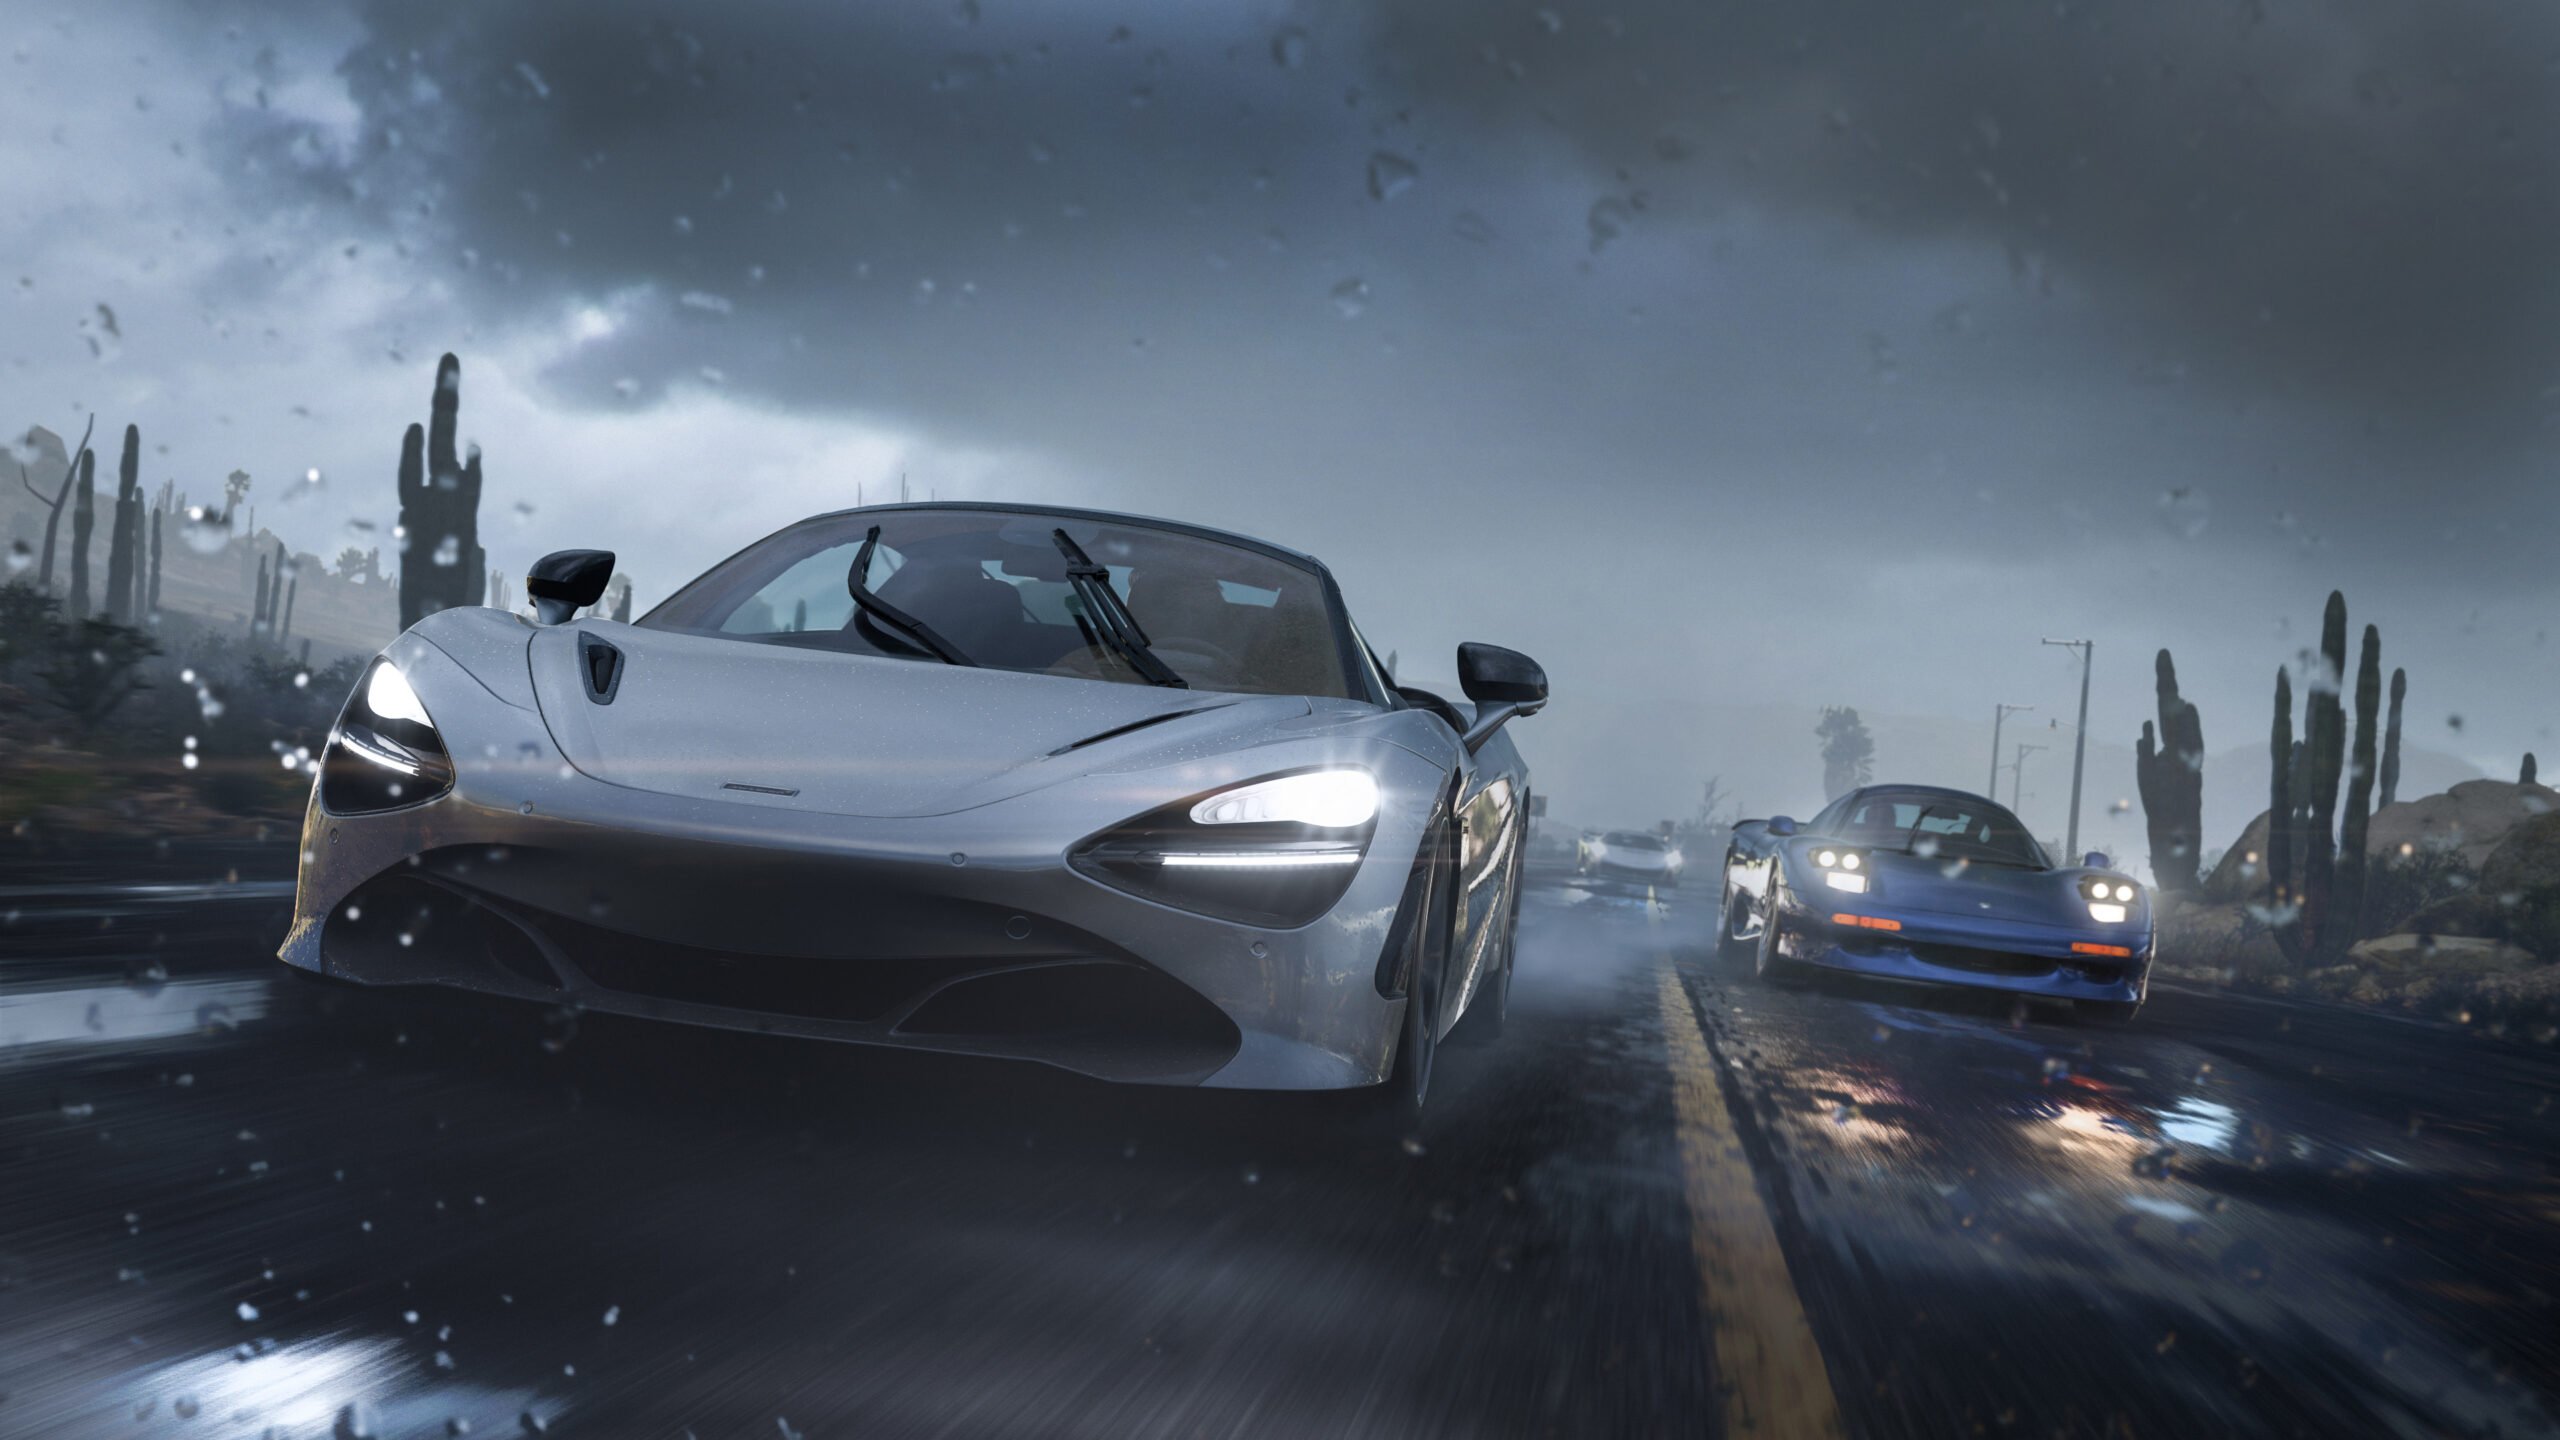 Hình nền Forza 4K của chúng tôi là một trong những lựa chọn tuyệt vời để trang trí cho màn hình của bạn. Với độ phân giải cao, hình ảnh đẹp và chân thật, bạn sẽ ngỡ như mình đang ngồi sau vô lăng của chiếc xe đua đang chạy với tốc độ cao. 